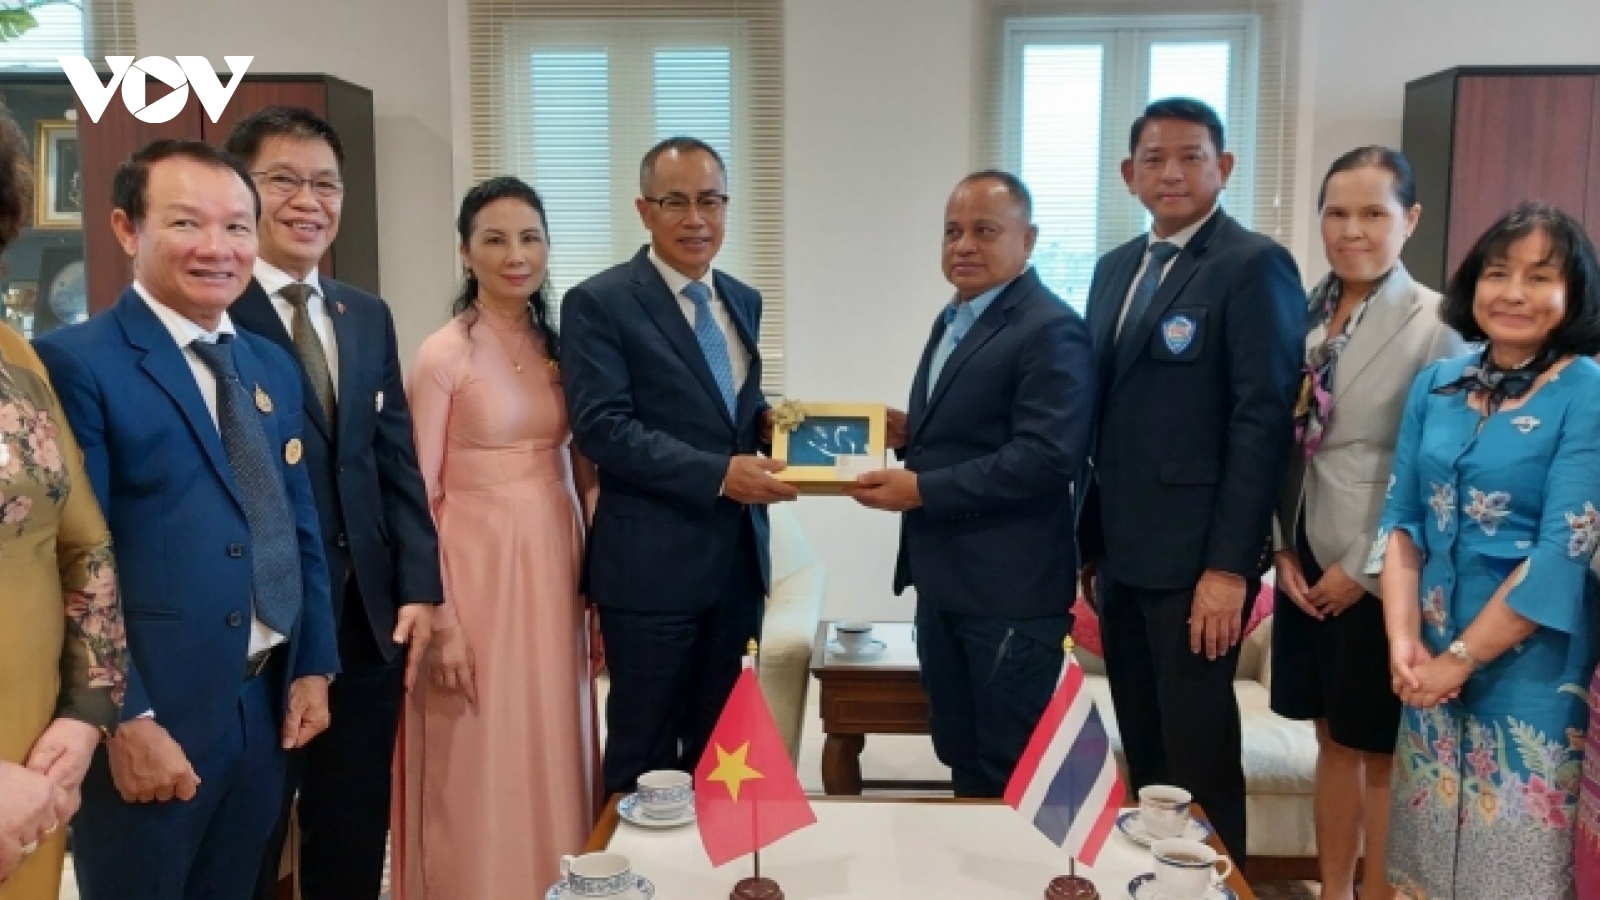 Phuket của Thái Lan mong muốn thúc đẩy hợp tác với các địa phương Việt Nam